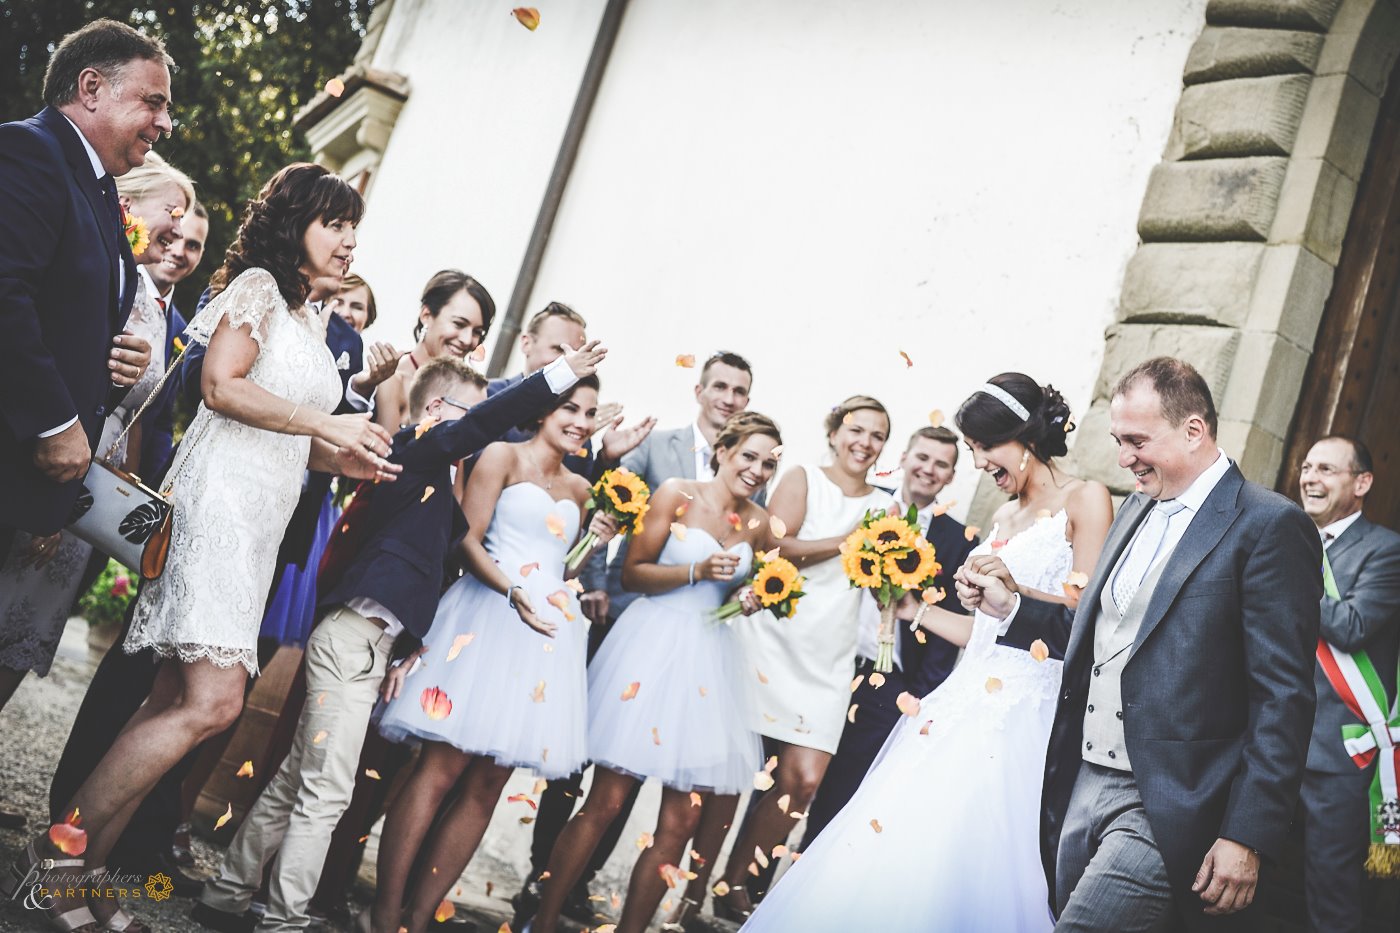 Martyna & Piotr wedding at Castello Vicchiomaggio